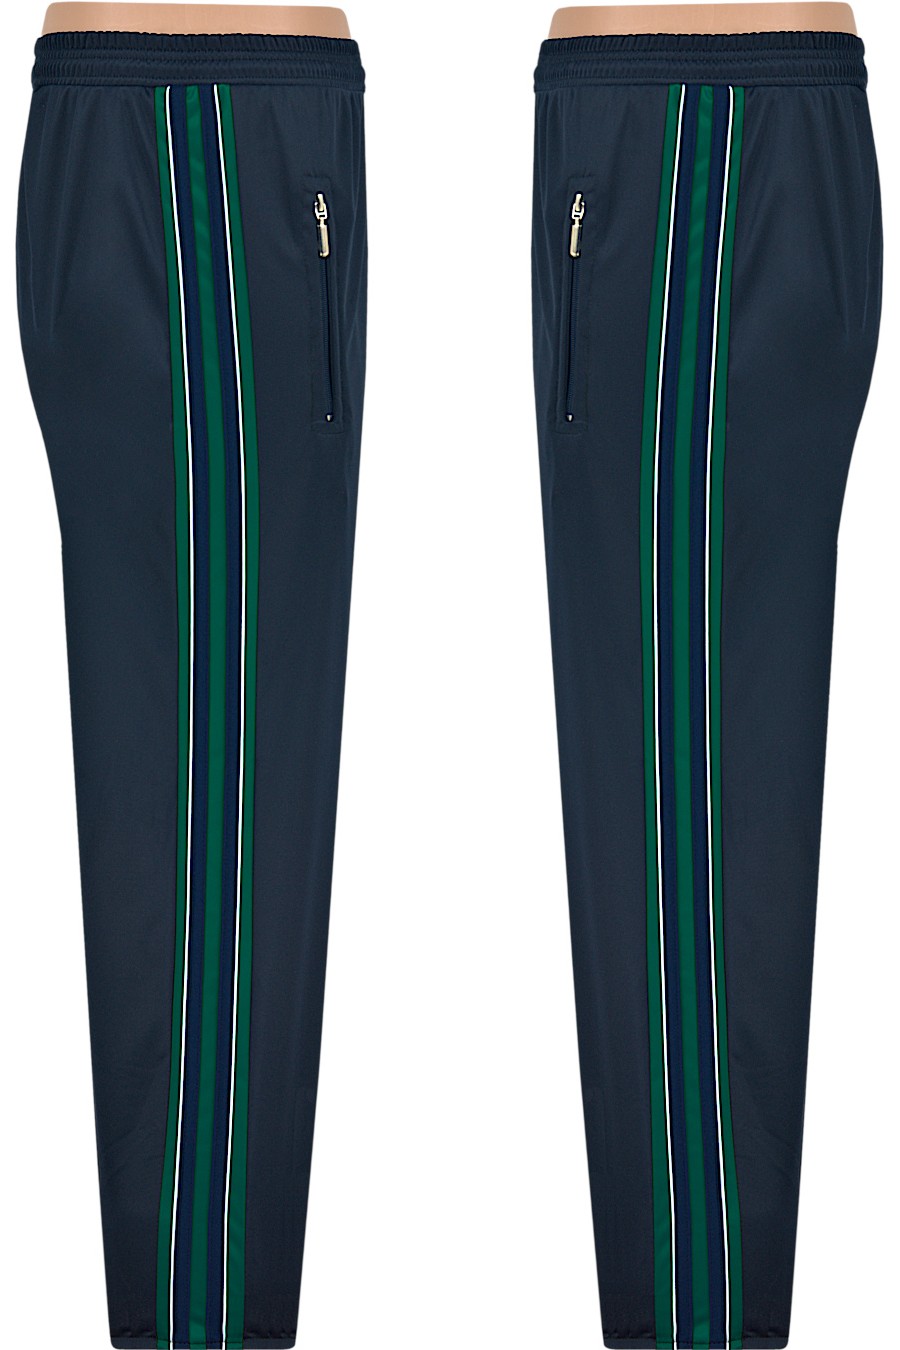 Spodnie sportowe poliester z lampasem - granat/zielony